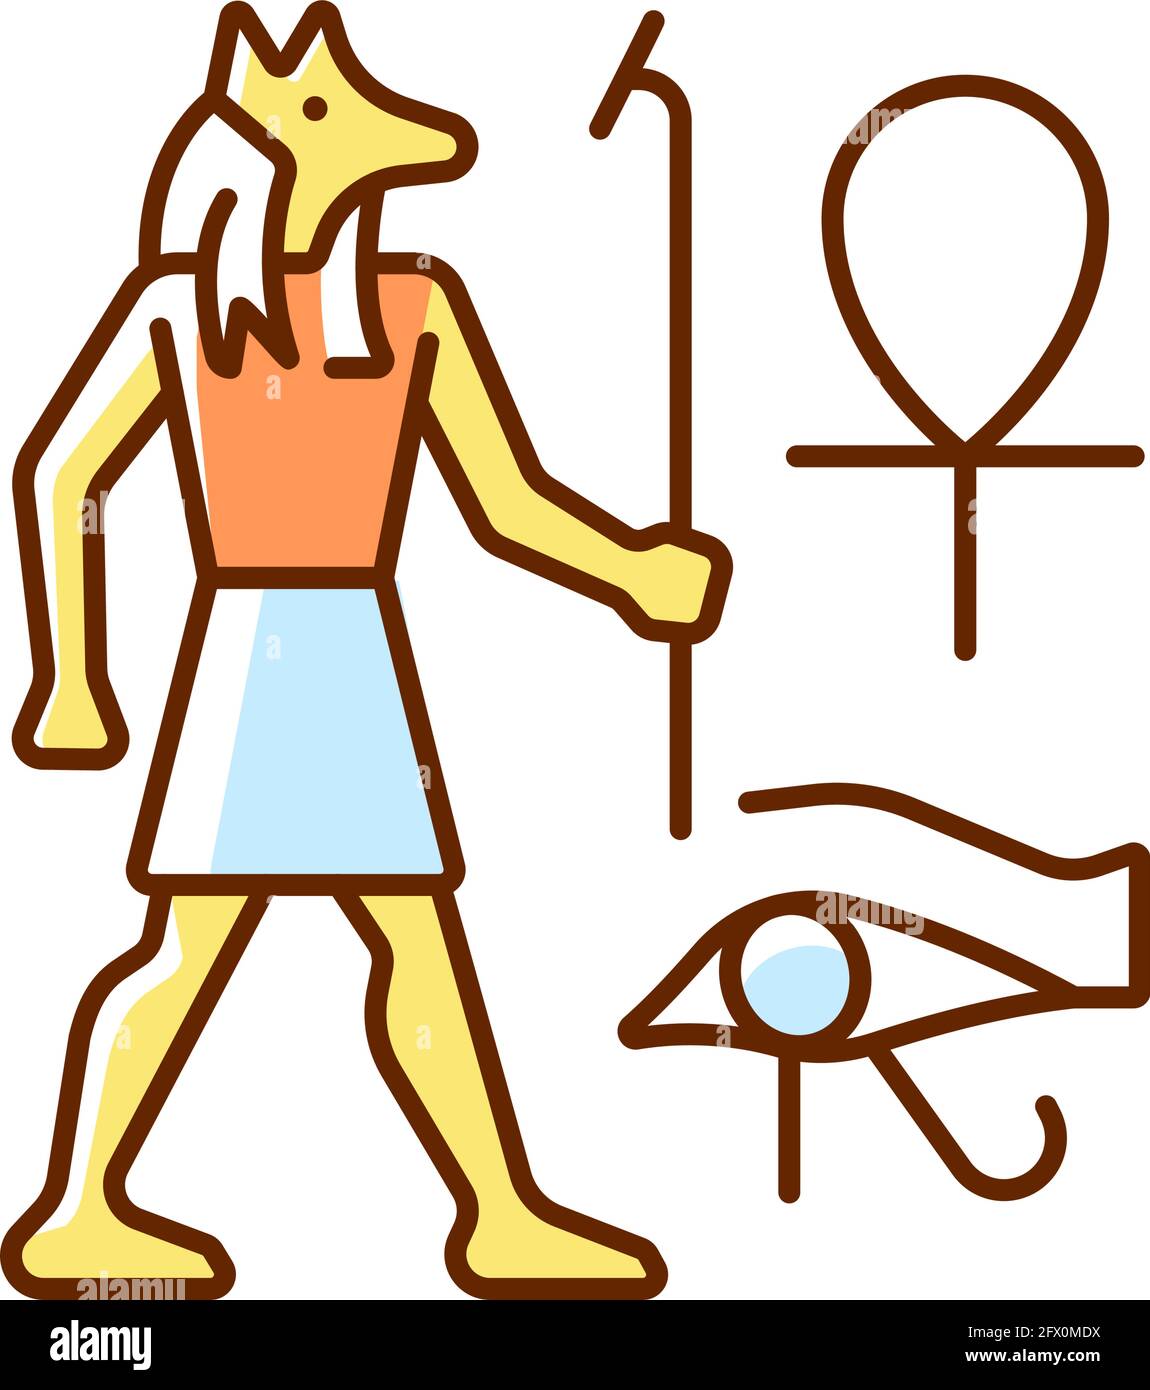 Antiguo relieve egipcio Imágenes vectoriales de stock - Alamy